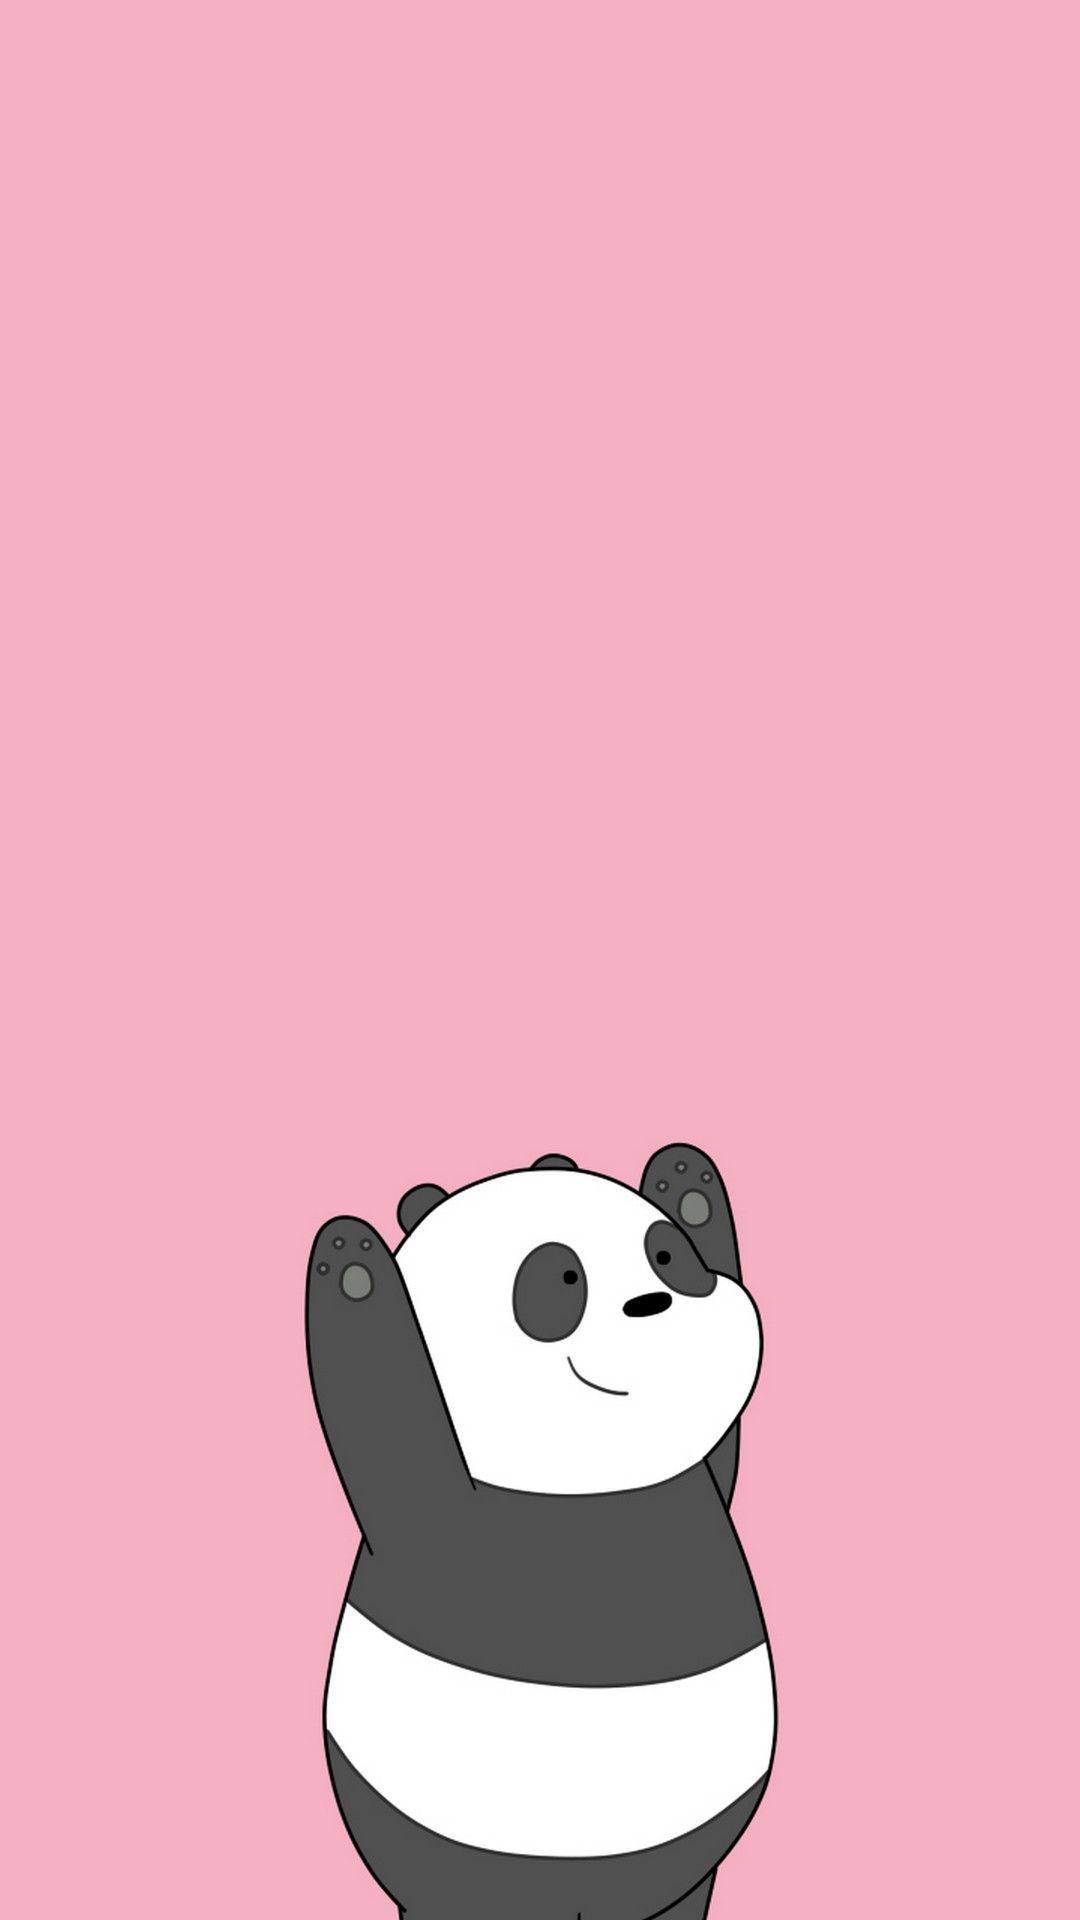 Cute Panda Cartoon Wallpapers - Wallpaper Cave